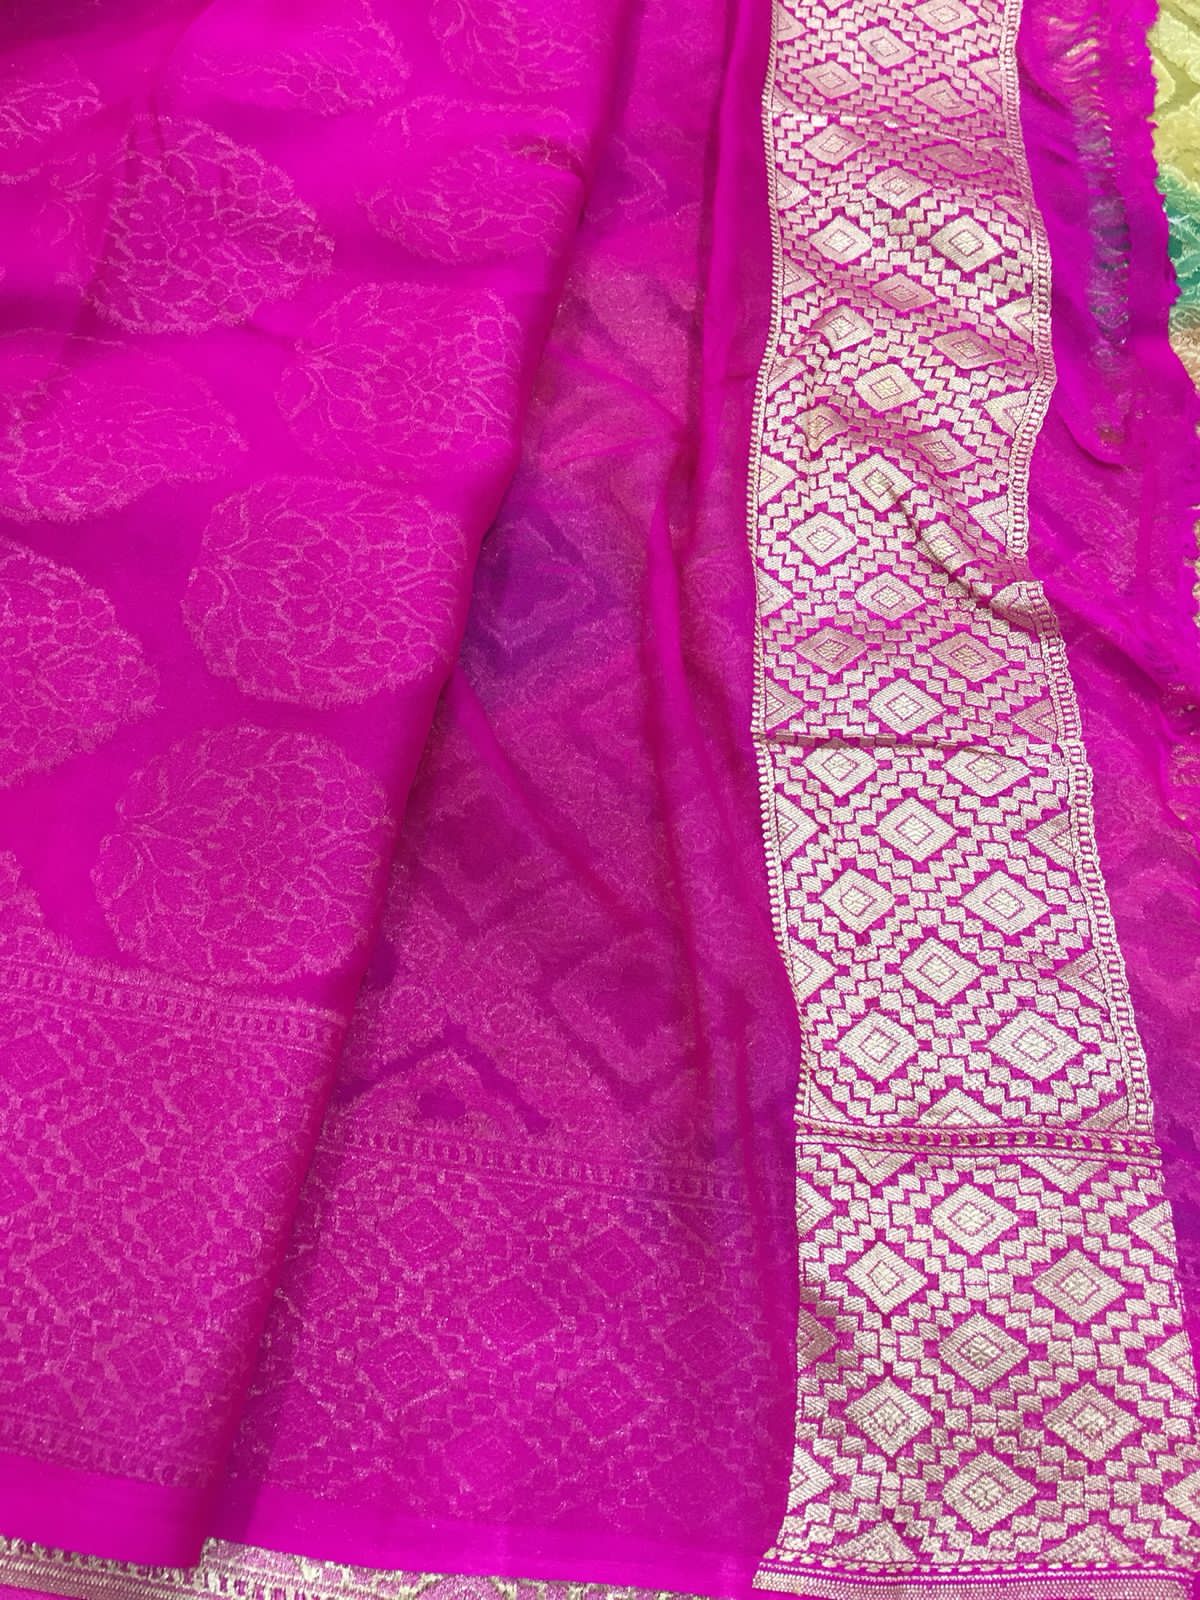 Rivayat handloom gorgette saree